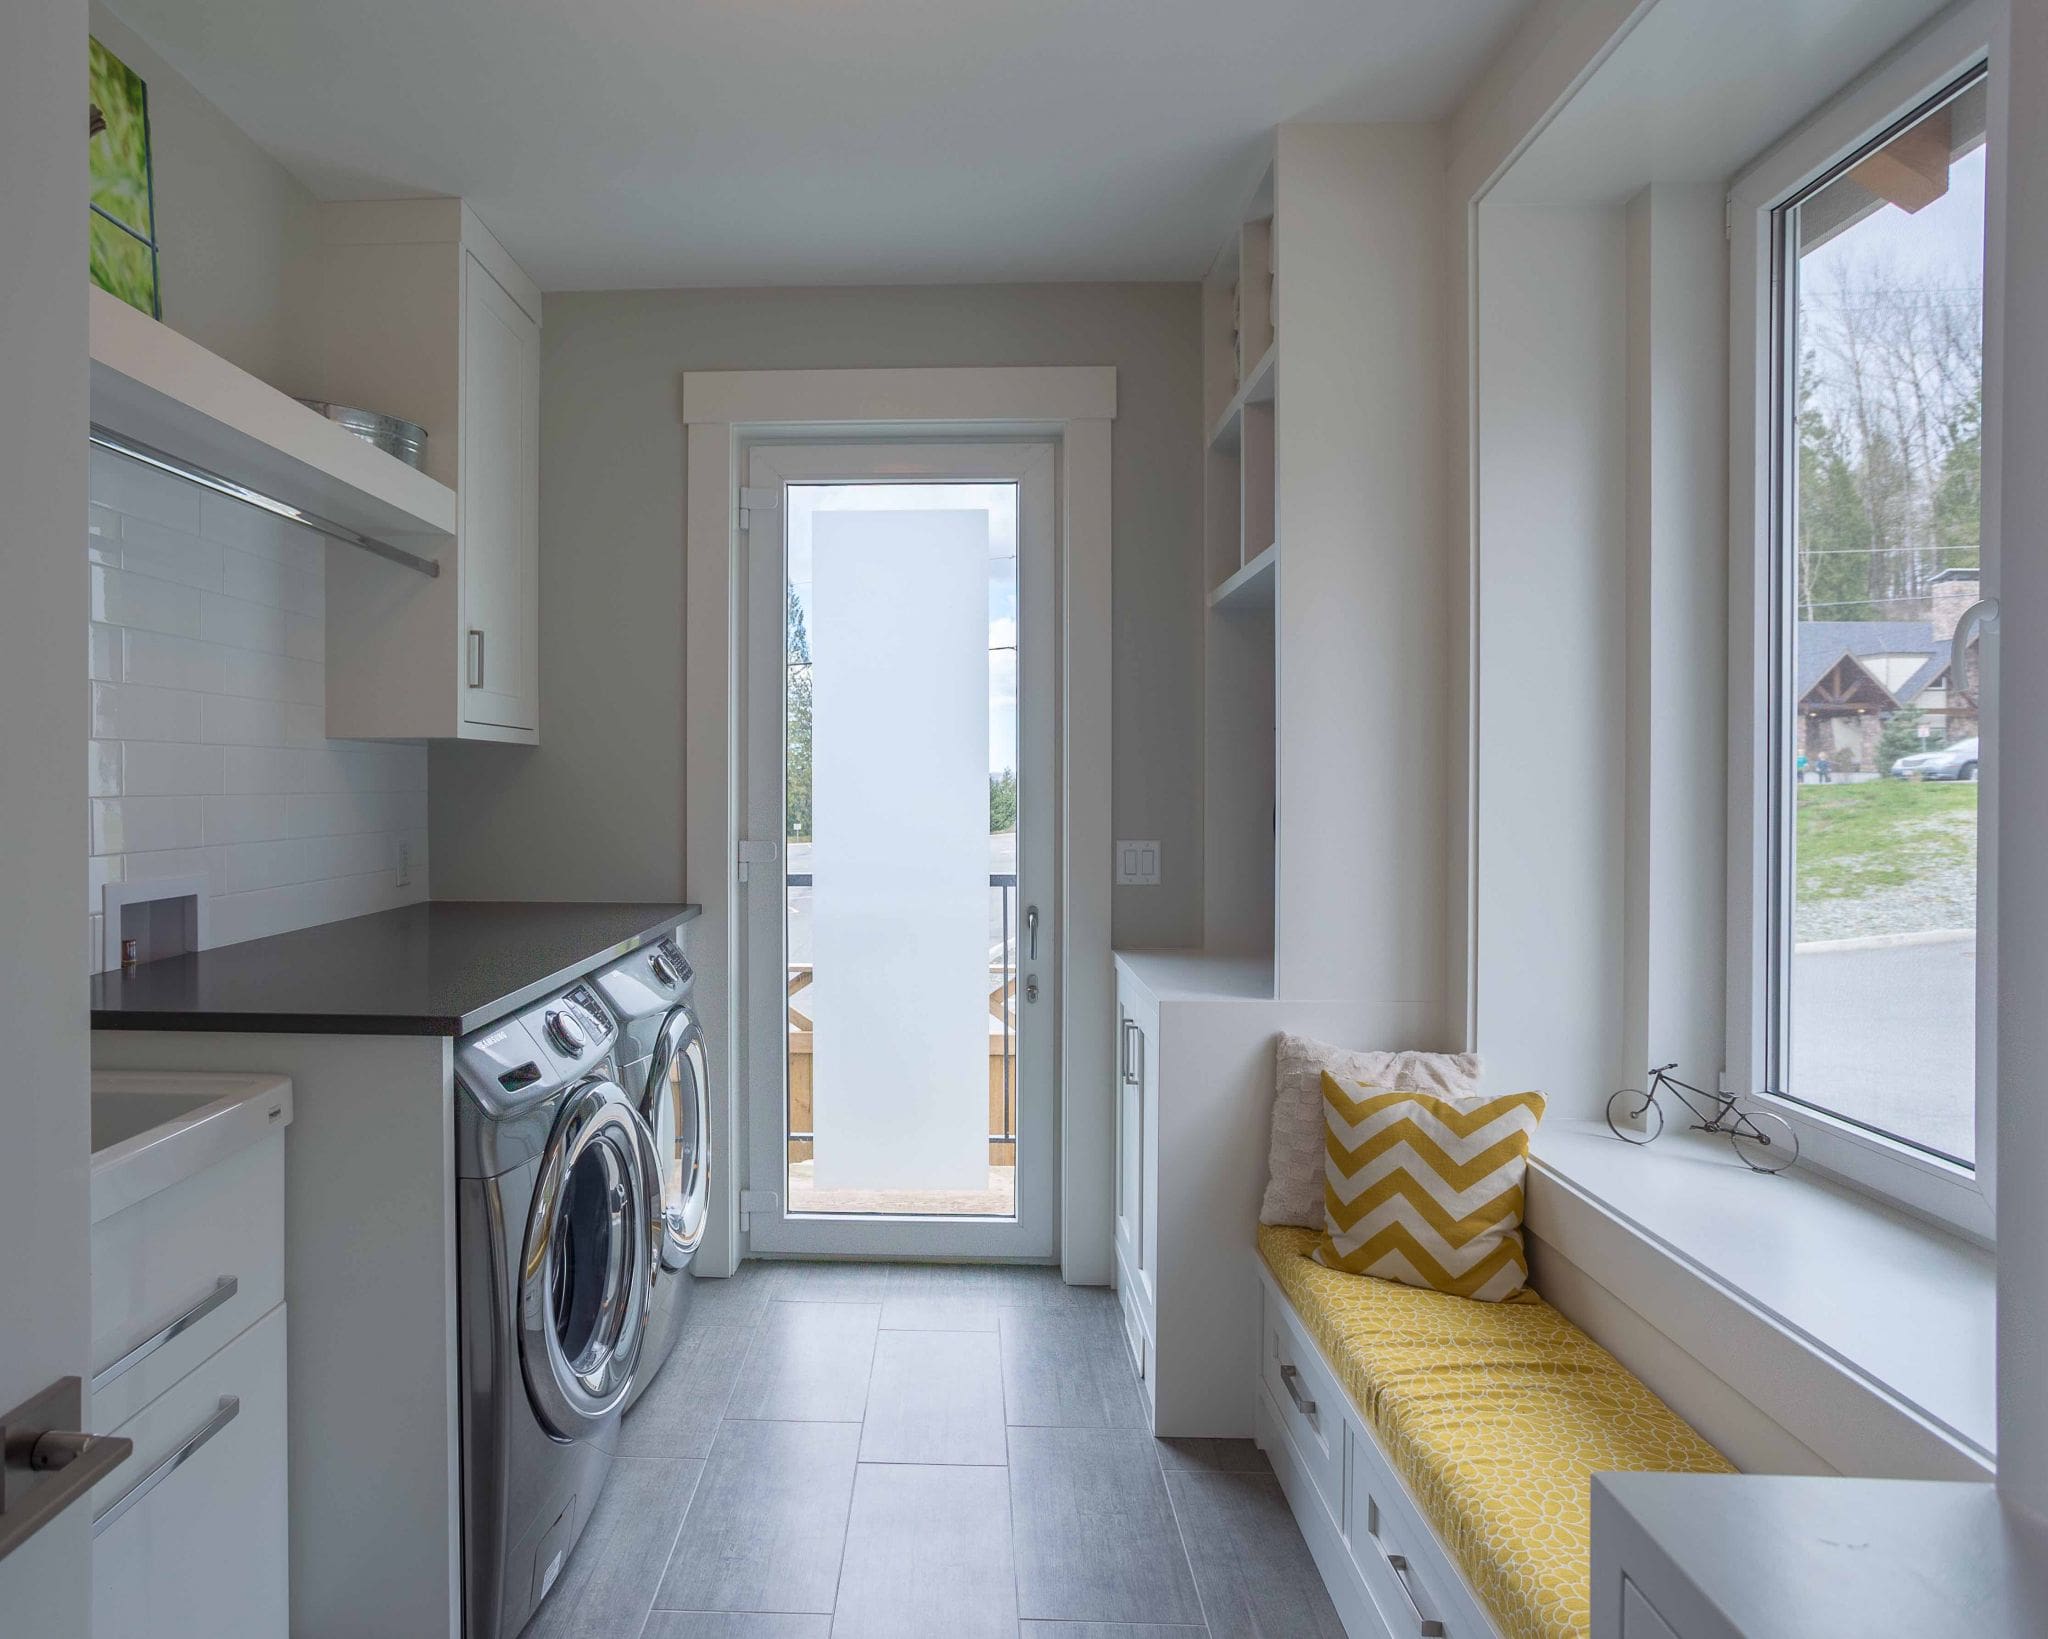 Straiton Timber Frame Home Laundry Room | Streamline Design Ltd